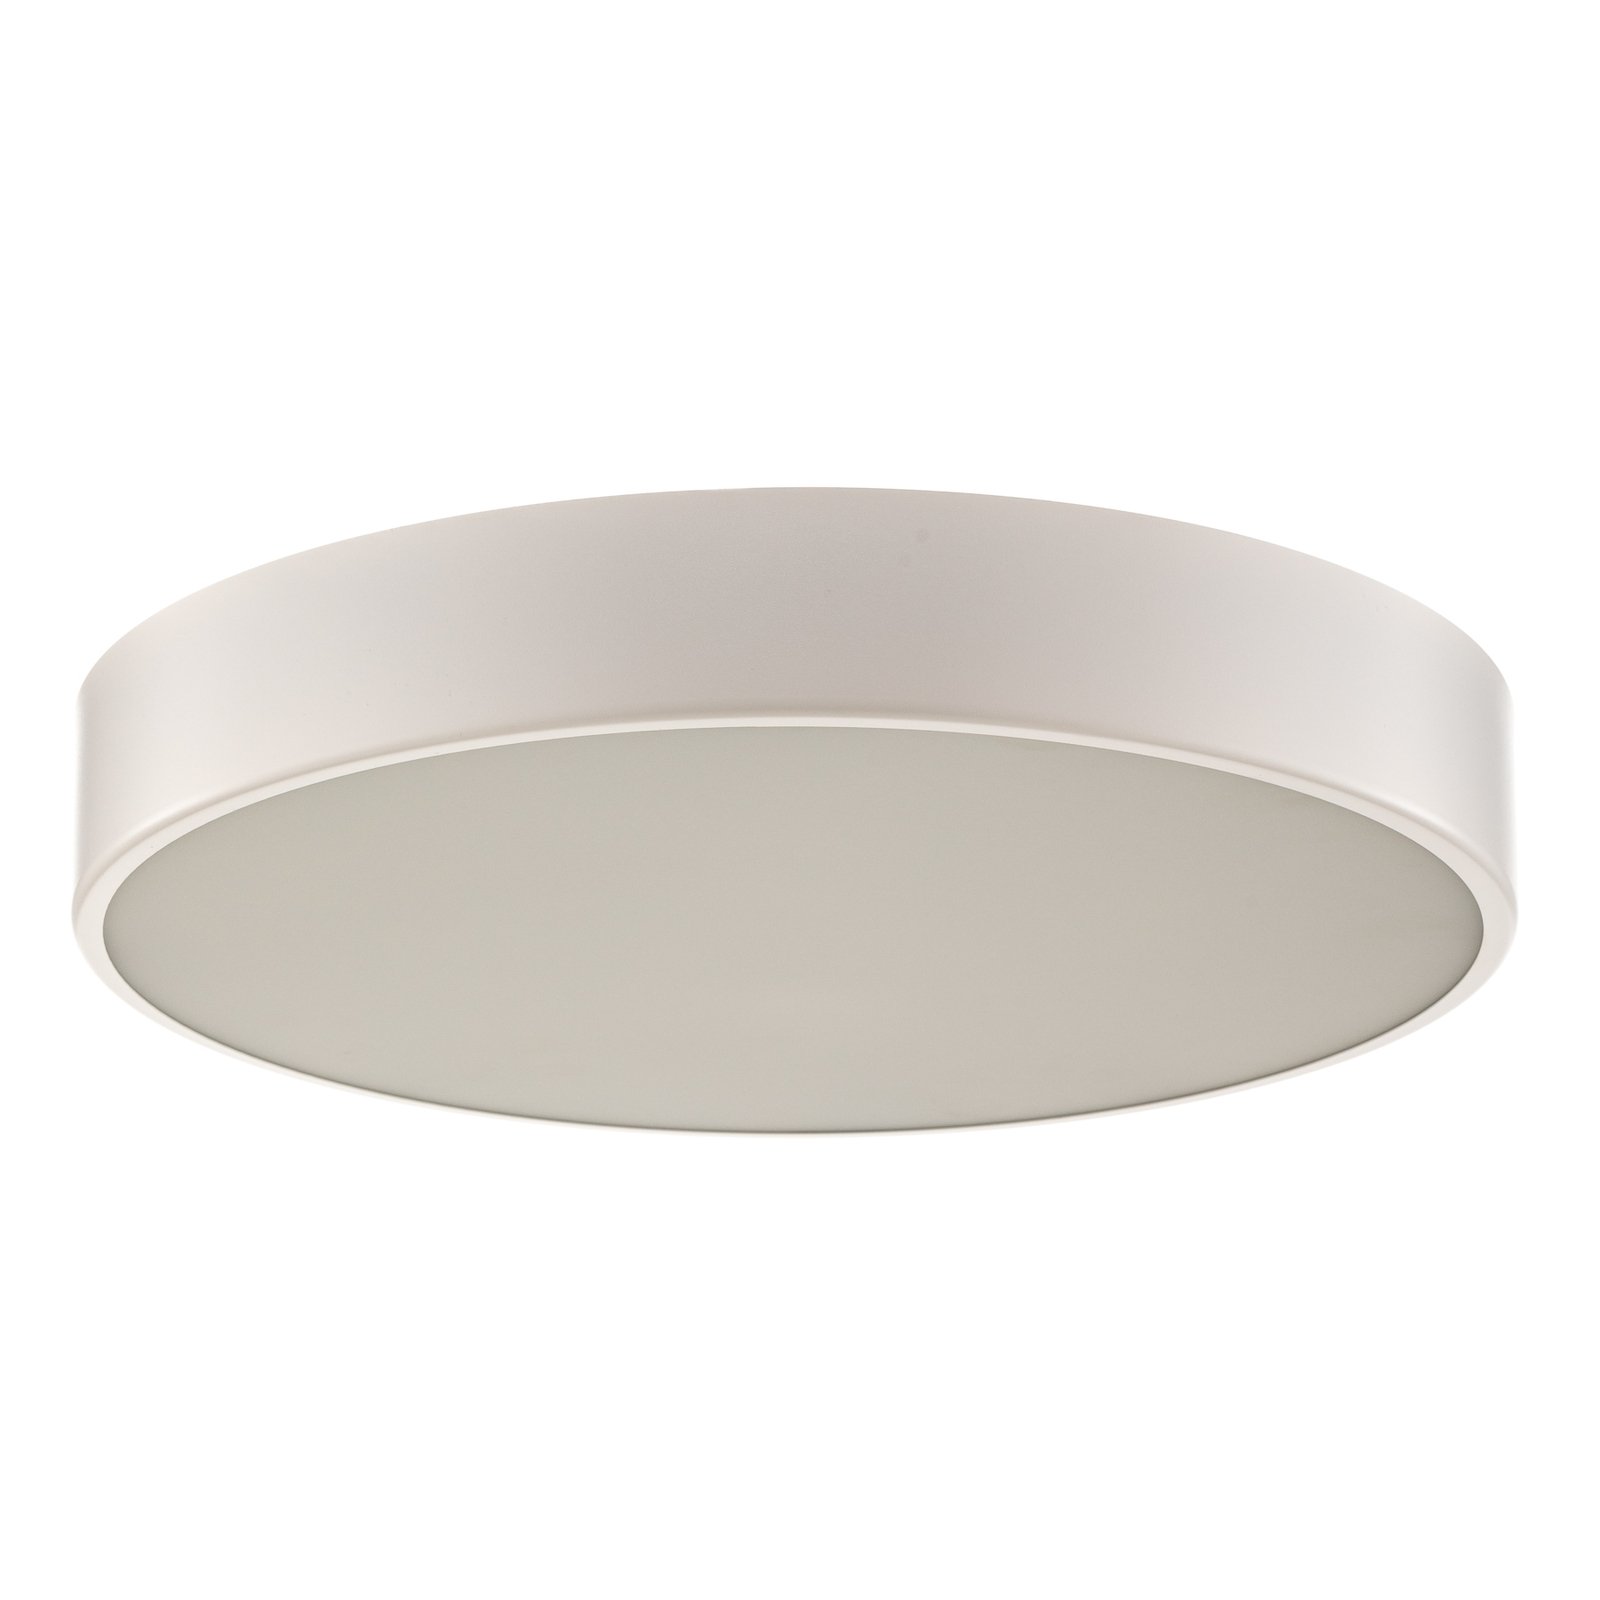 Cleo 500 ceiling light, sensor, Ø 50 cm white